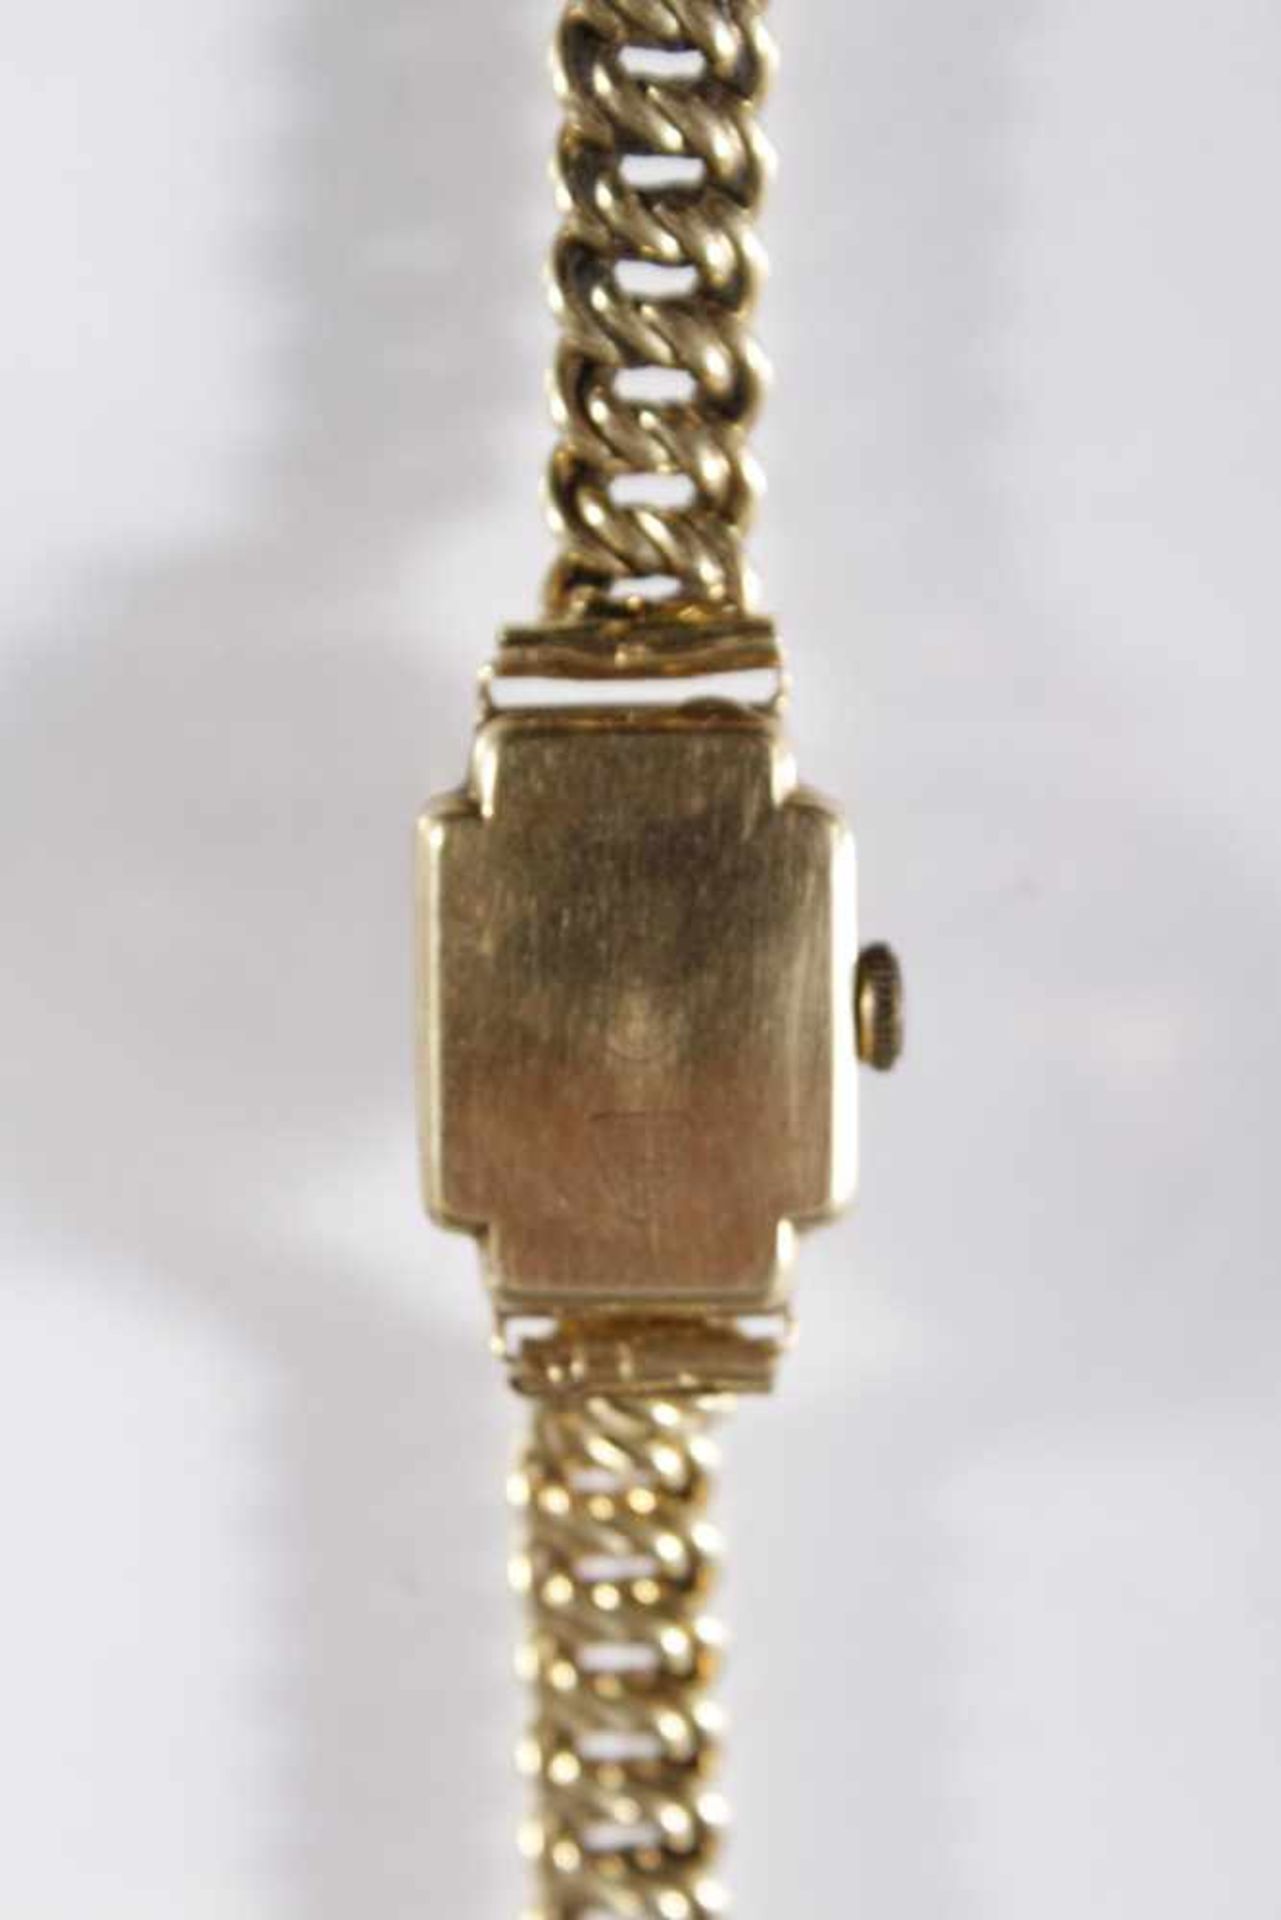 Damenarmbanduhr der Marke Anker, 14 Karat Gelbgold - Bild 3 aus 4